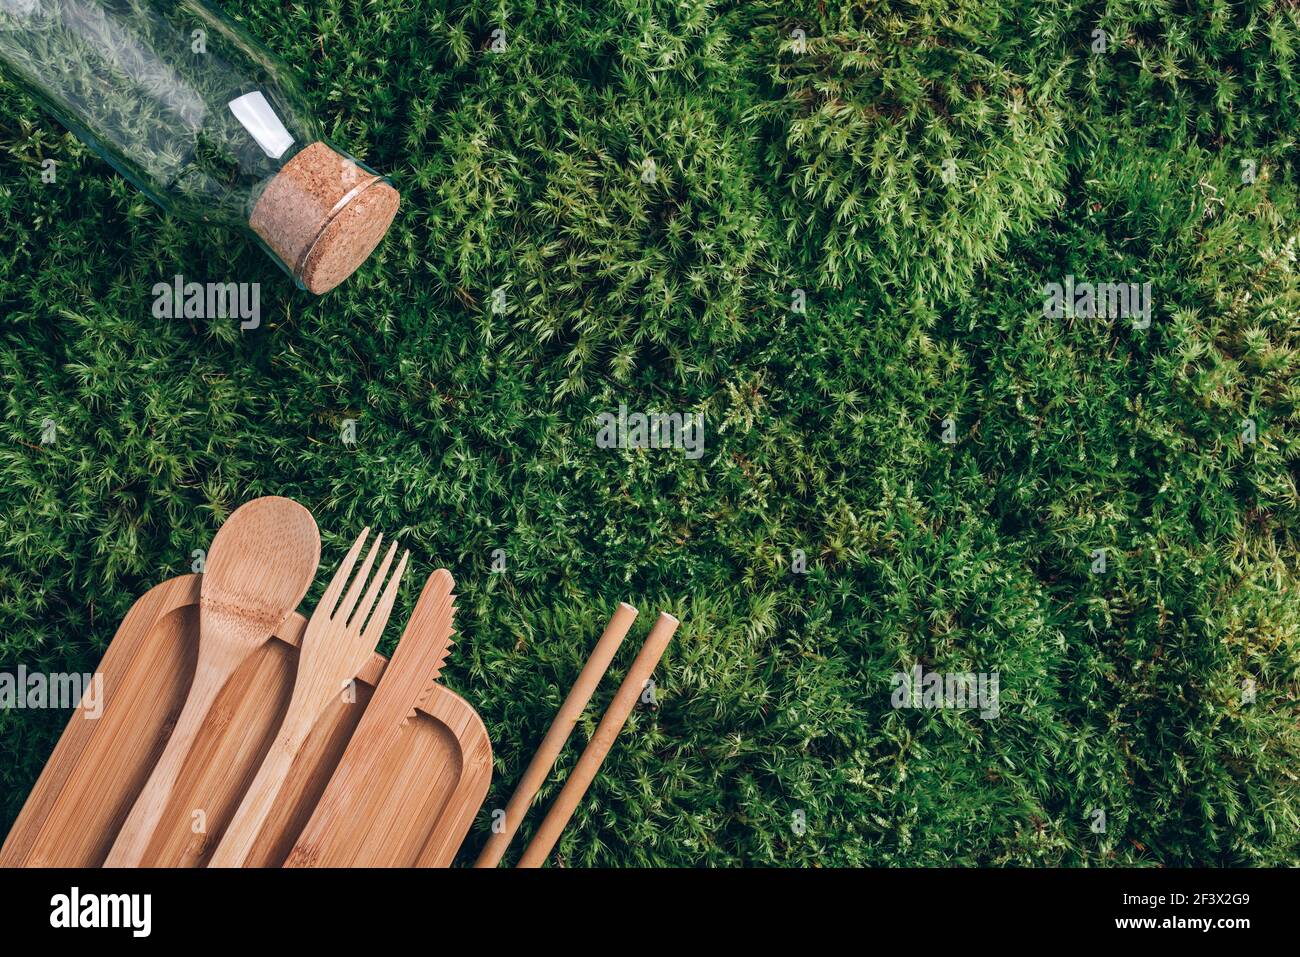 Glasflasche, umweltfreundliches Bambusbesteck, Verpackungen, Behälter zum Mitnehmen für Picknick oder Mittagessen auf grünem Mooshintergrund. Draufsicht. Speicherplatz kopieren Stockfoto